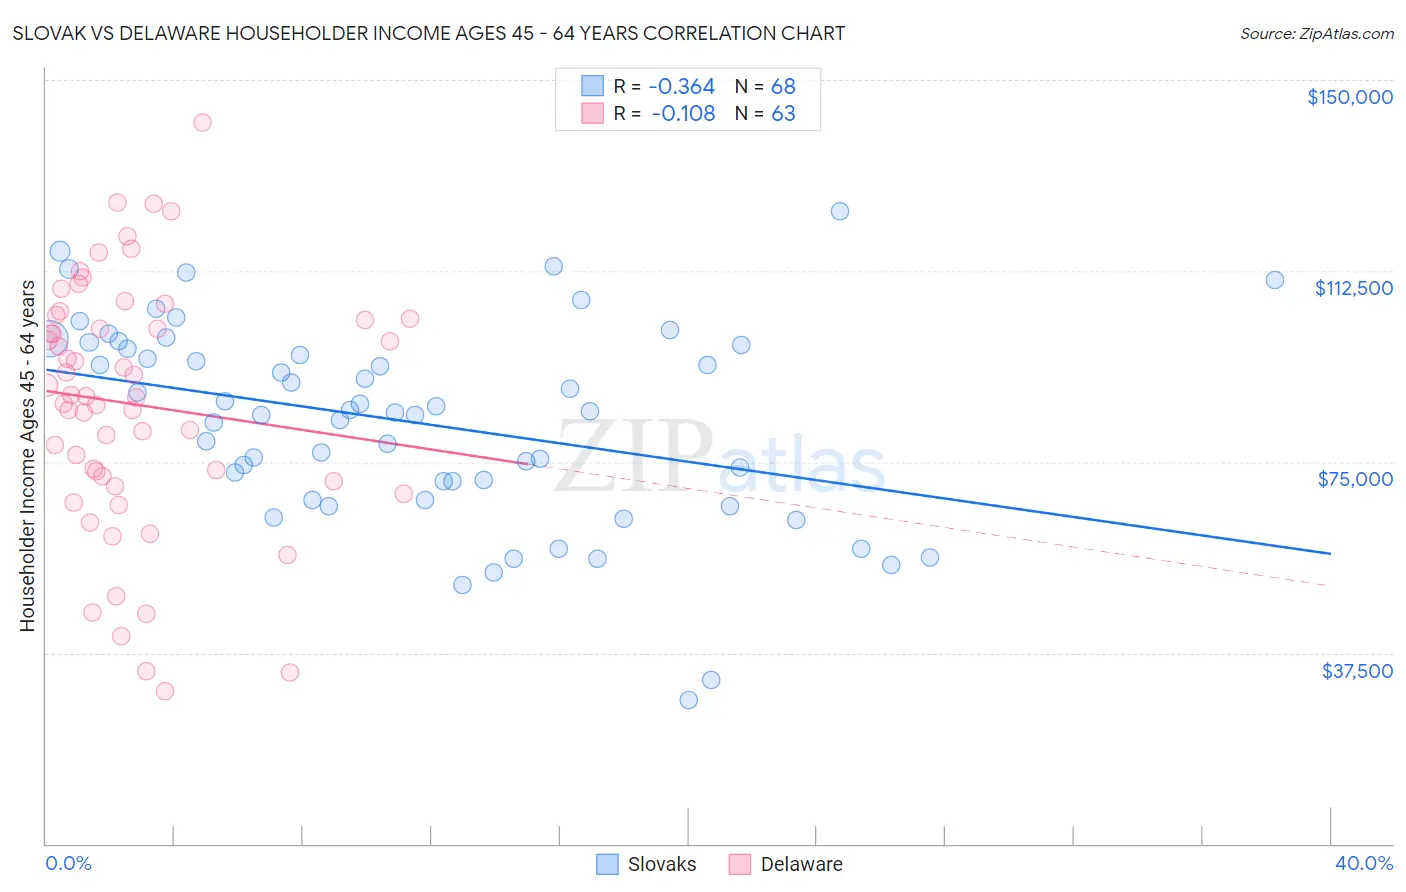 Slovak vs Delaware Householder Income Ages 45 - 64 years